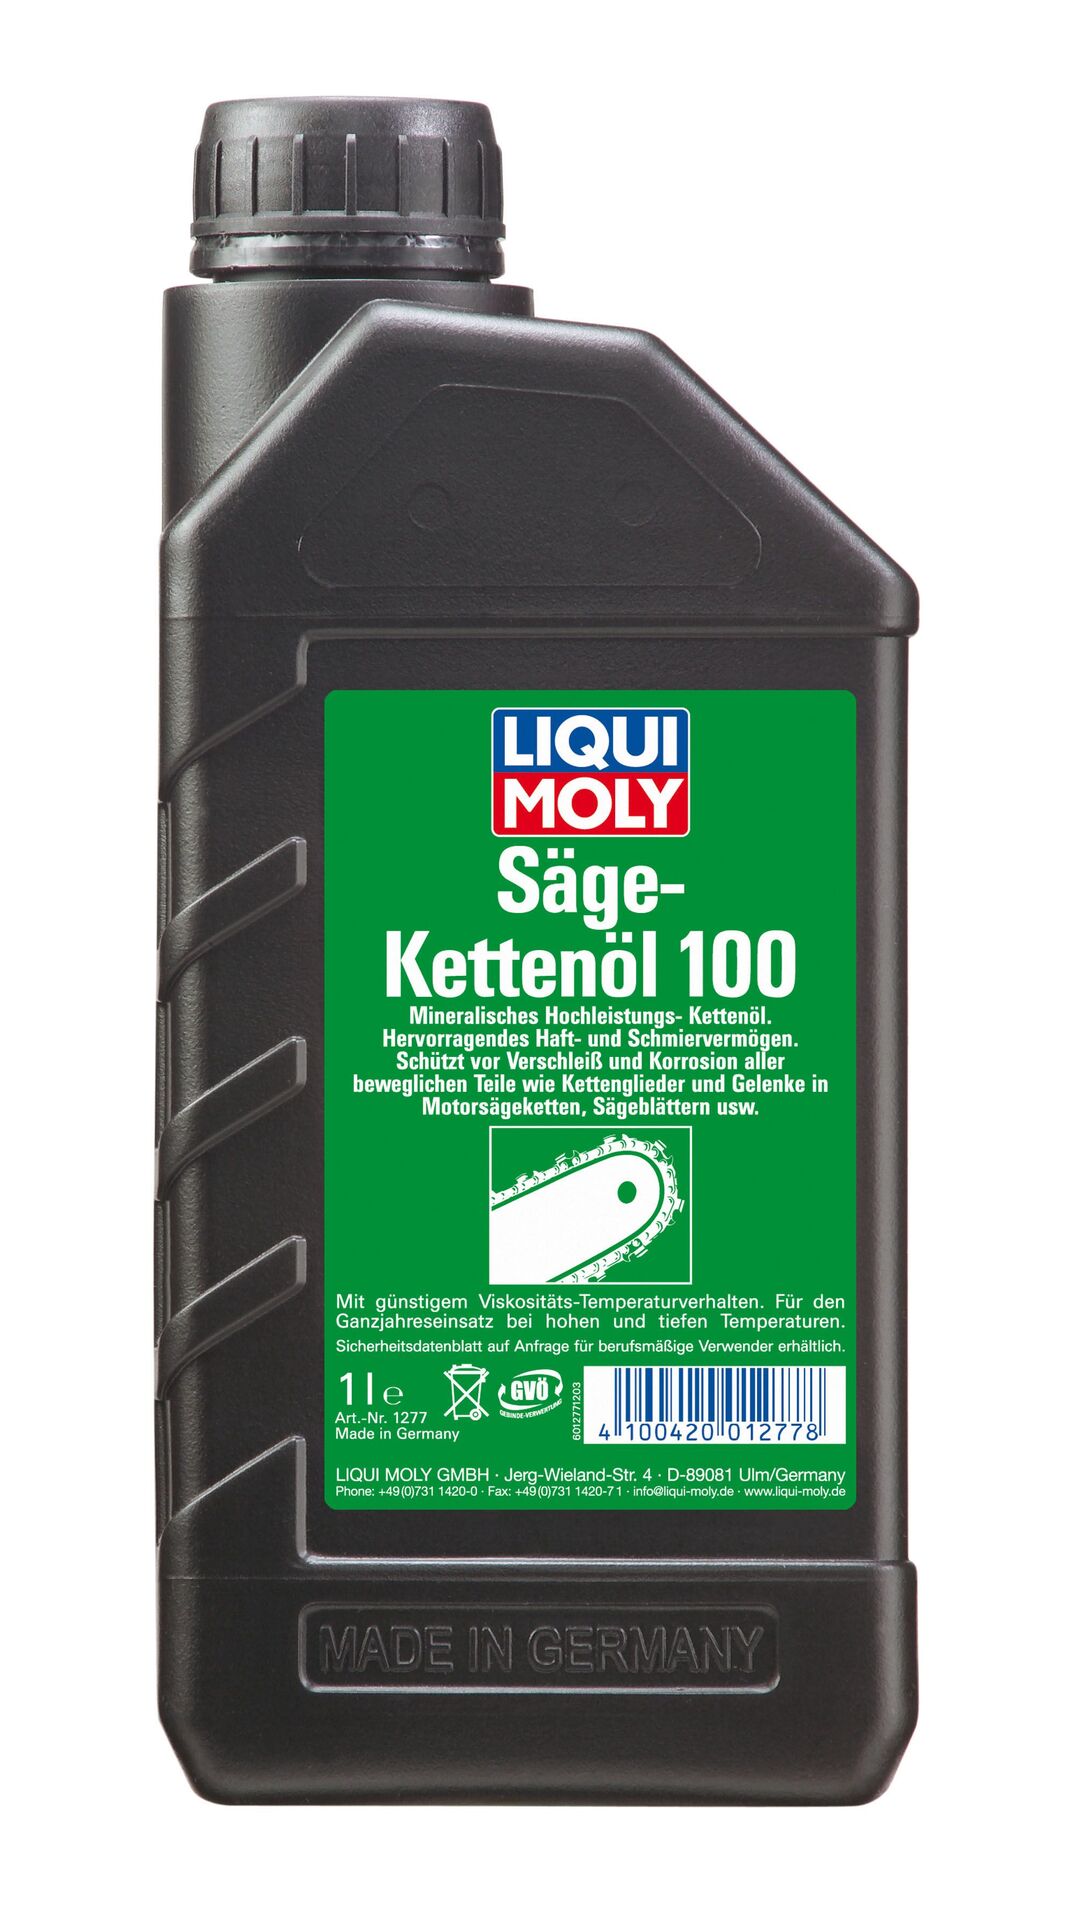 Liqui Moly Säge-Kettenöl 100